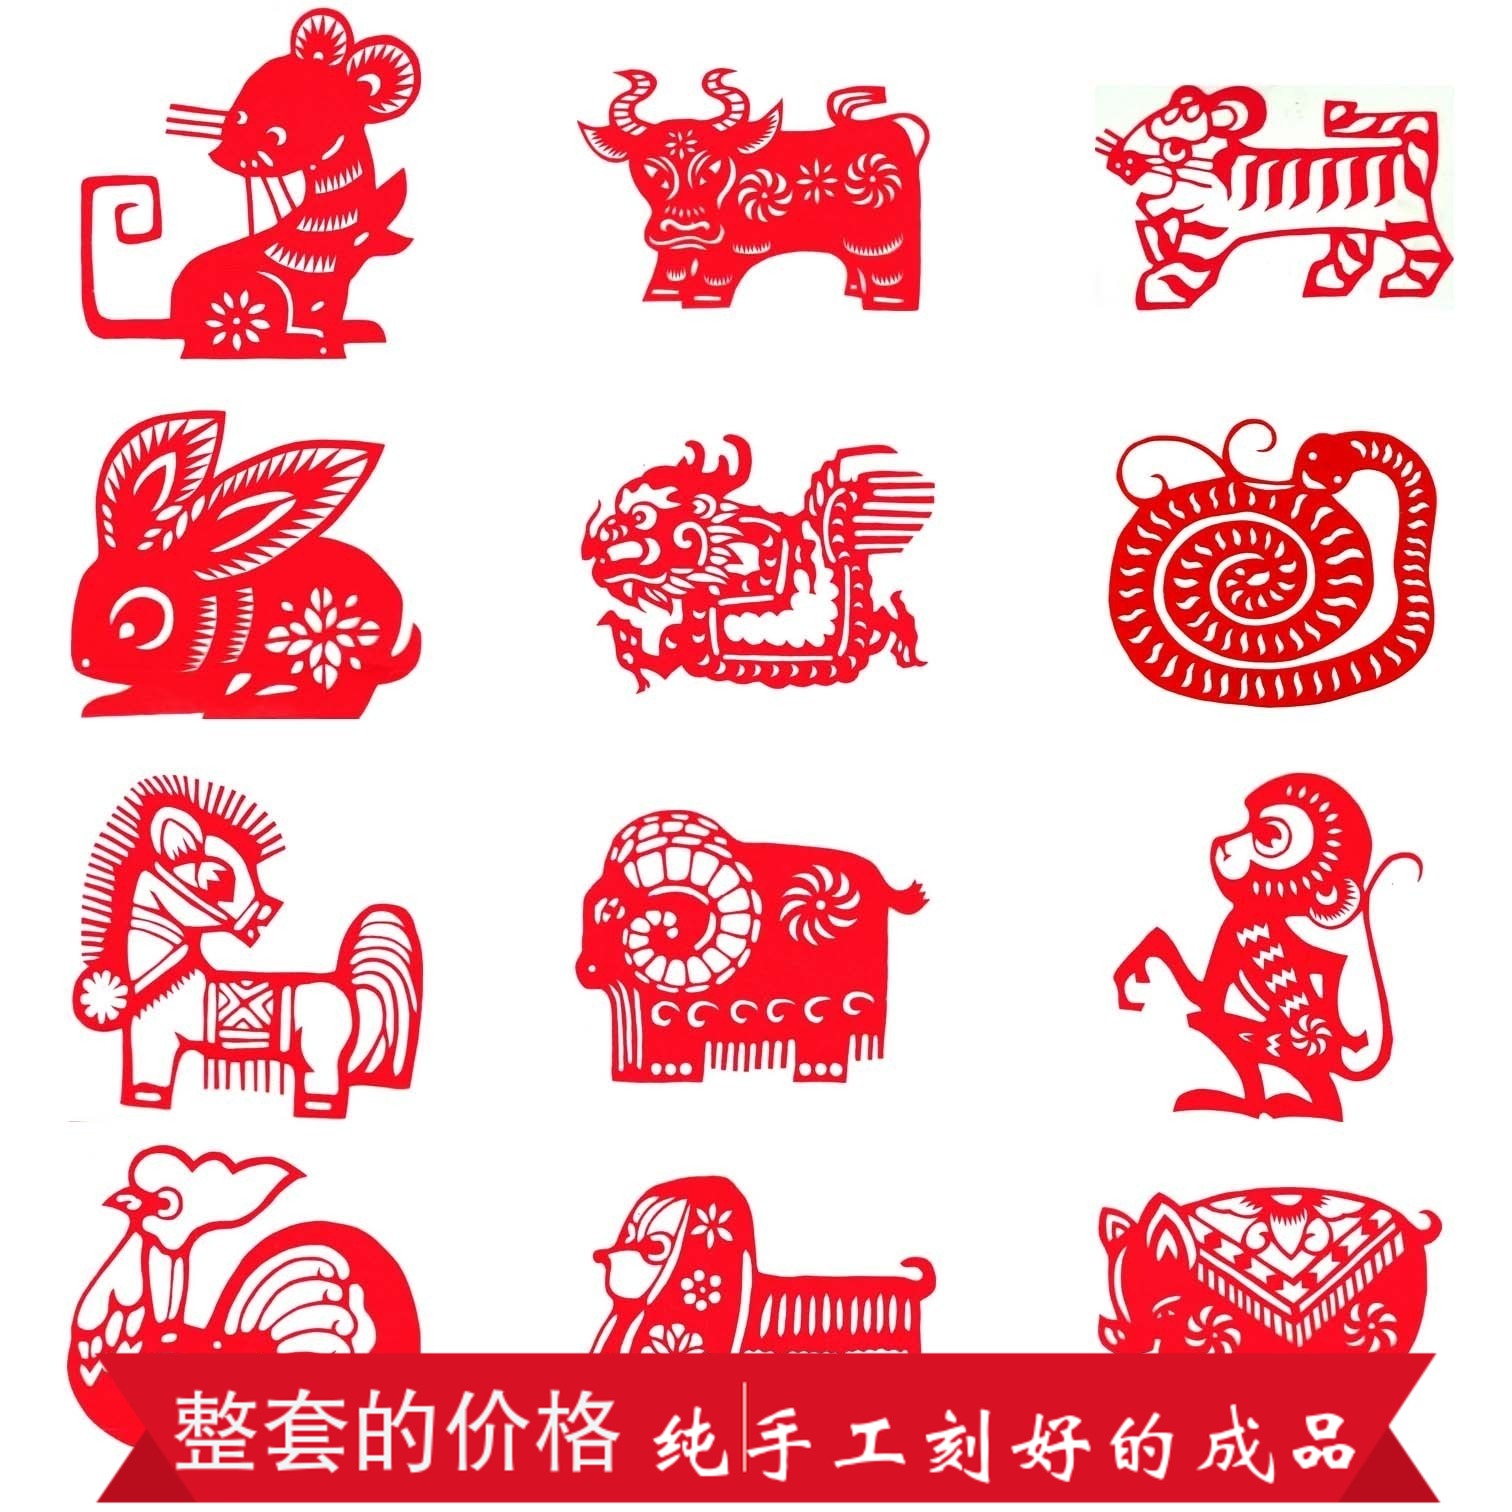 中国风纯手工十二生肖星座传统民俗脸谱学校幼儿园装饰礼品剪纸画